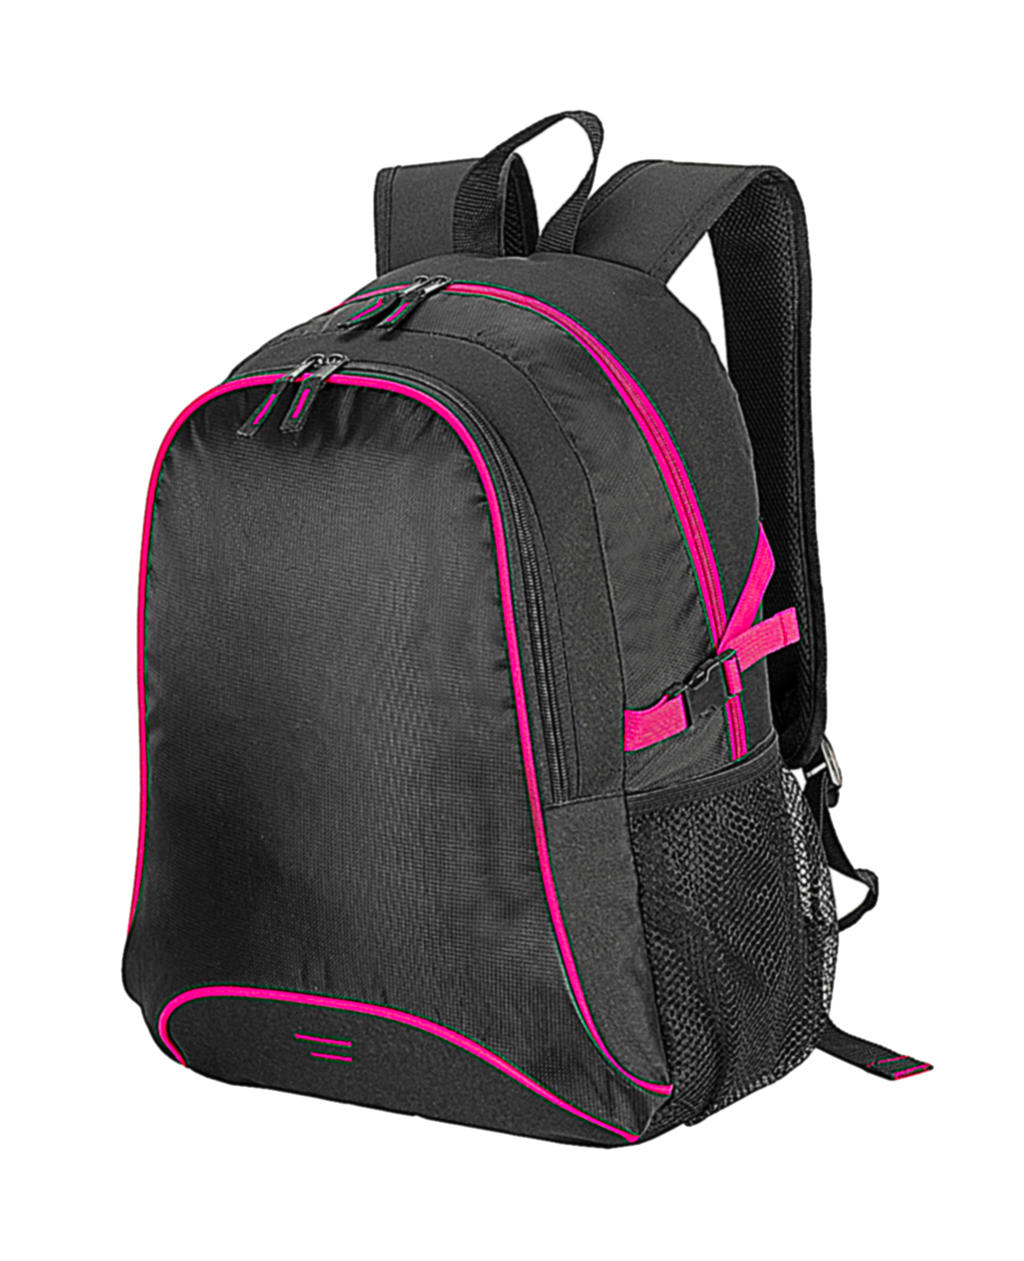  Osaka Basic Backpack in Farbe Black/Hot Pink